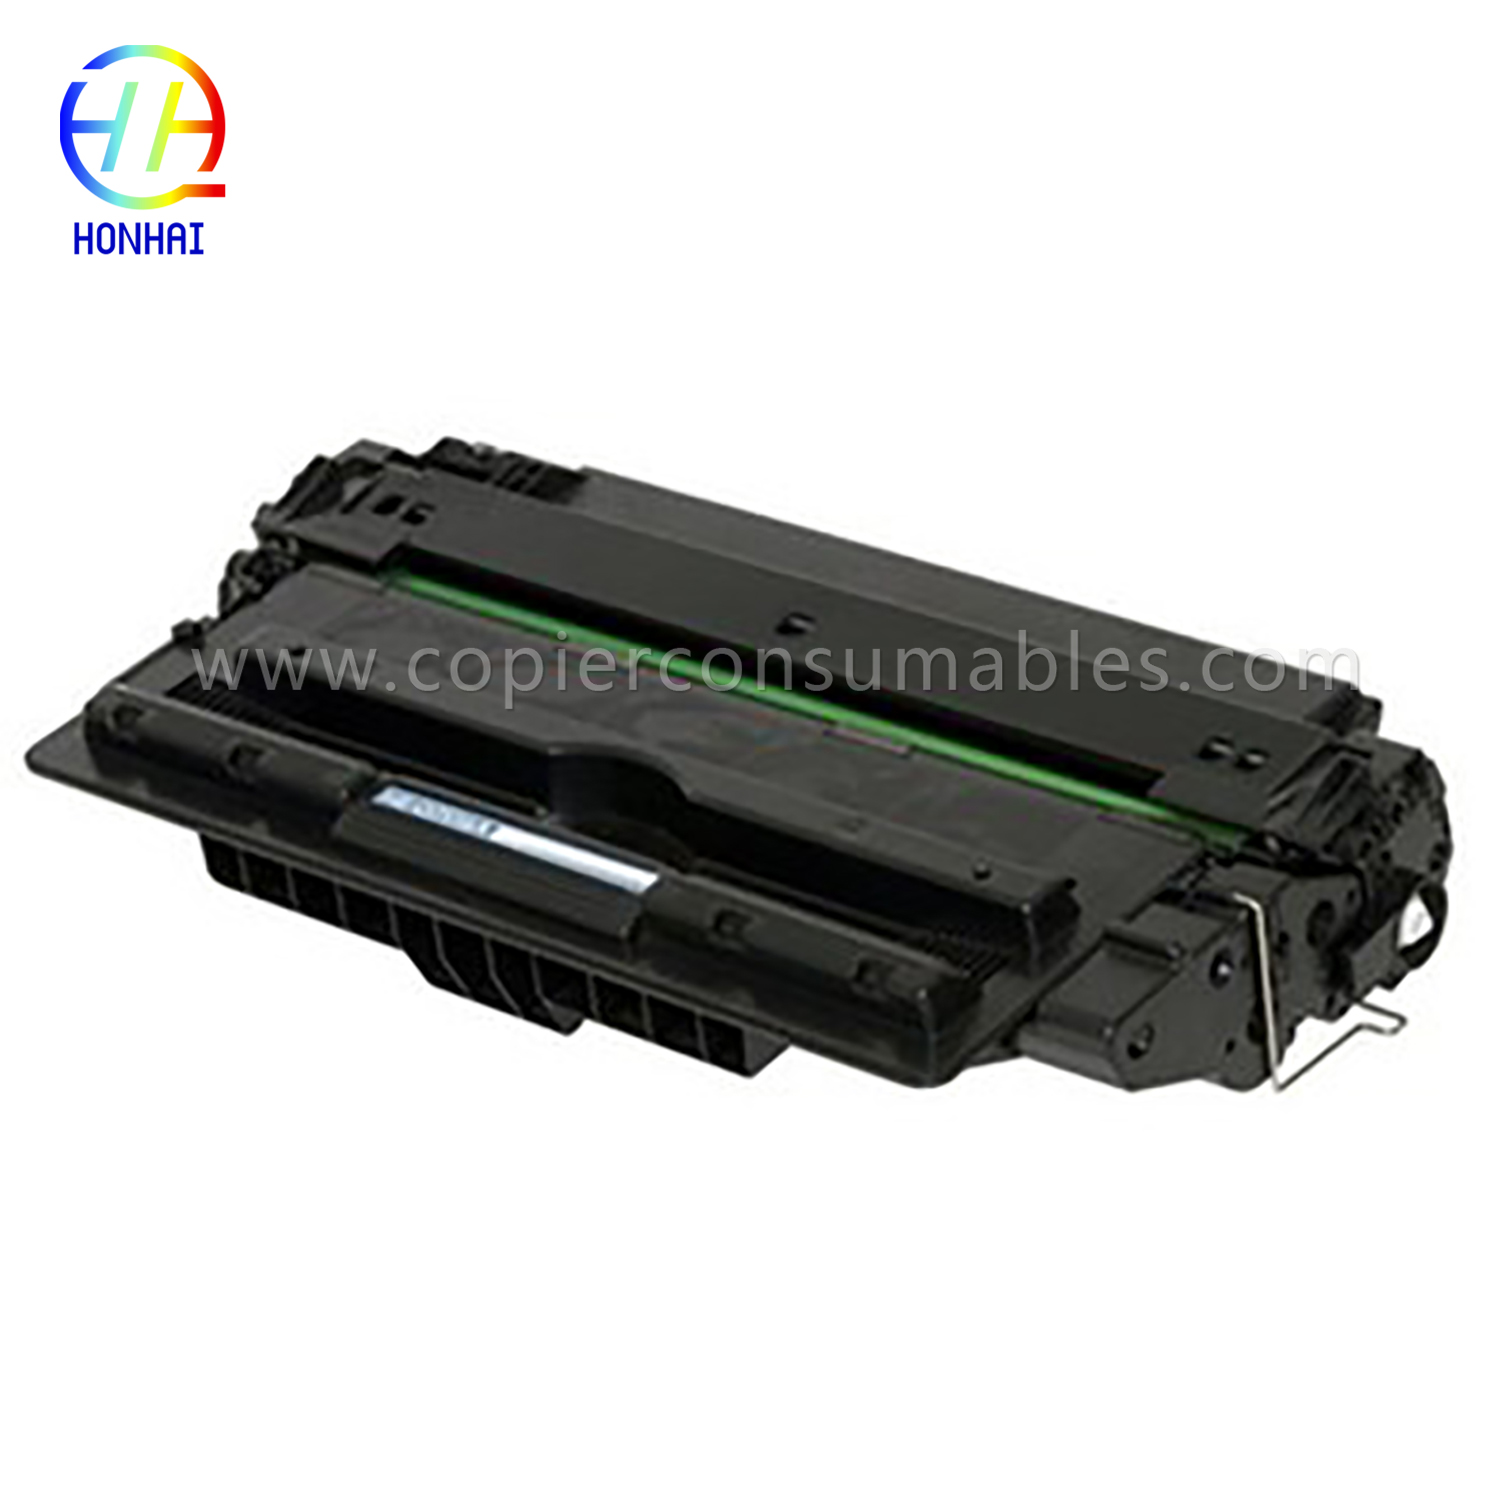 Toner Cartridge alang sa HP LaserJet 5200 5200n 5200tn 5200dtn 5200L (Q7516A)